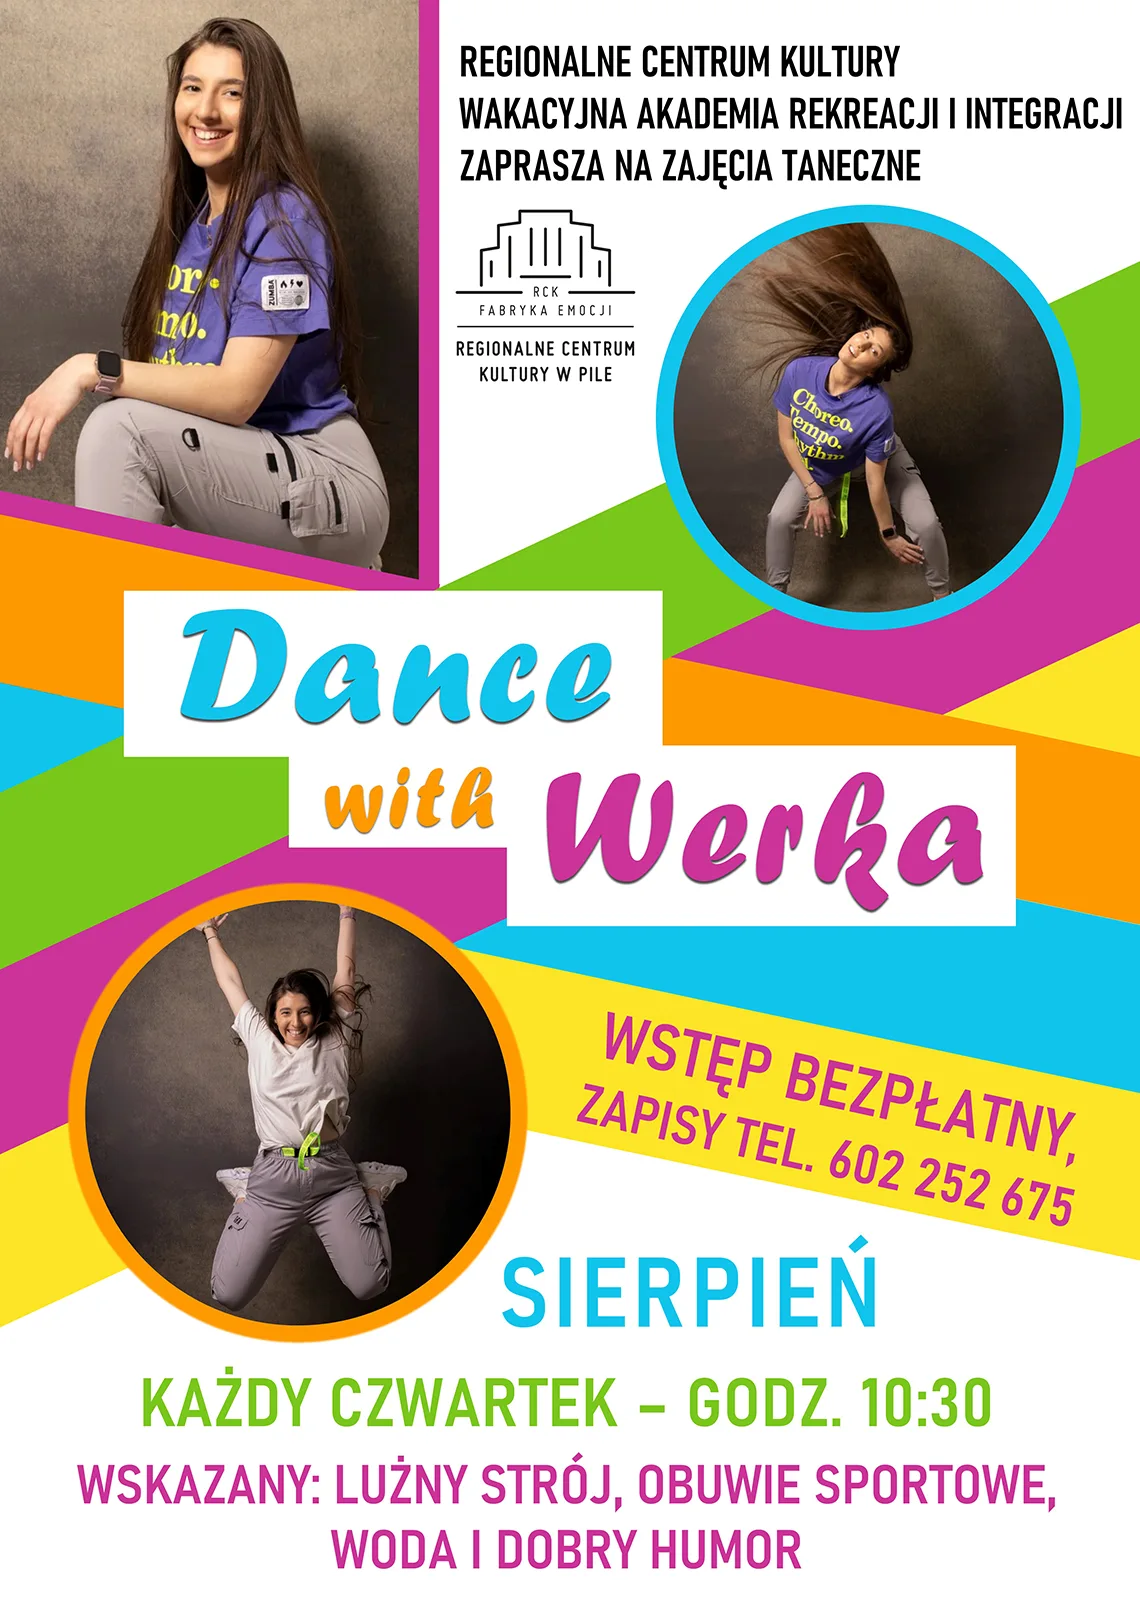 dance with werka